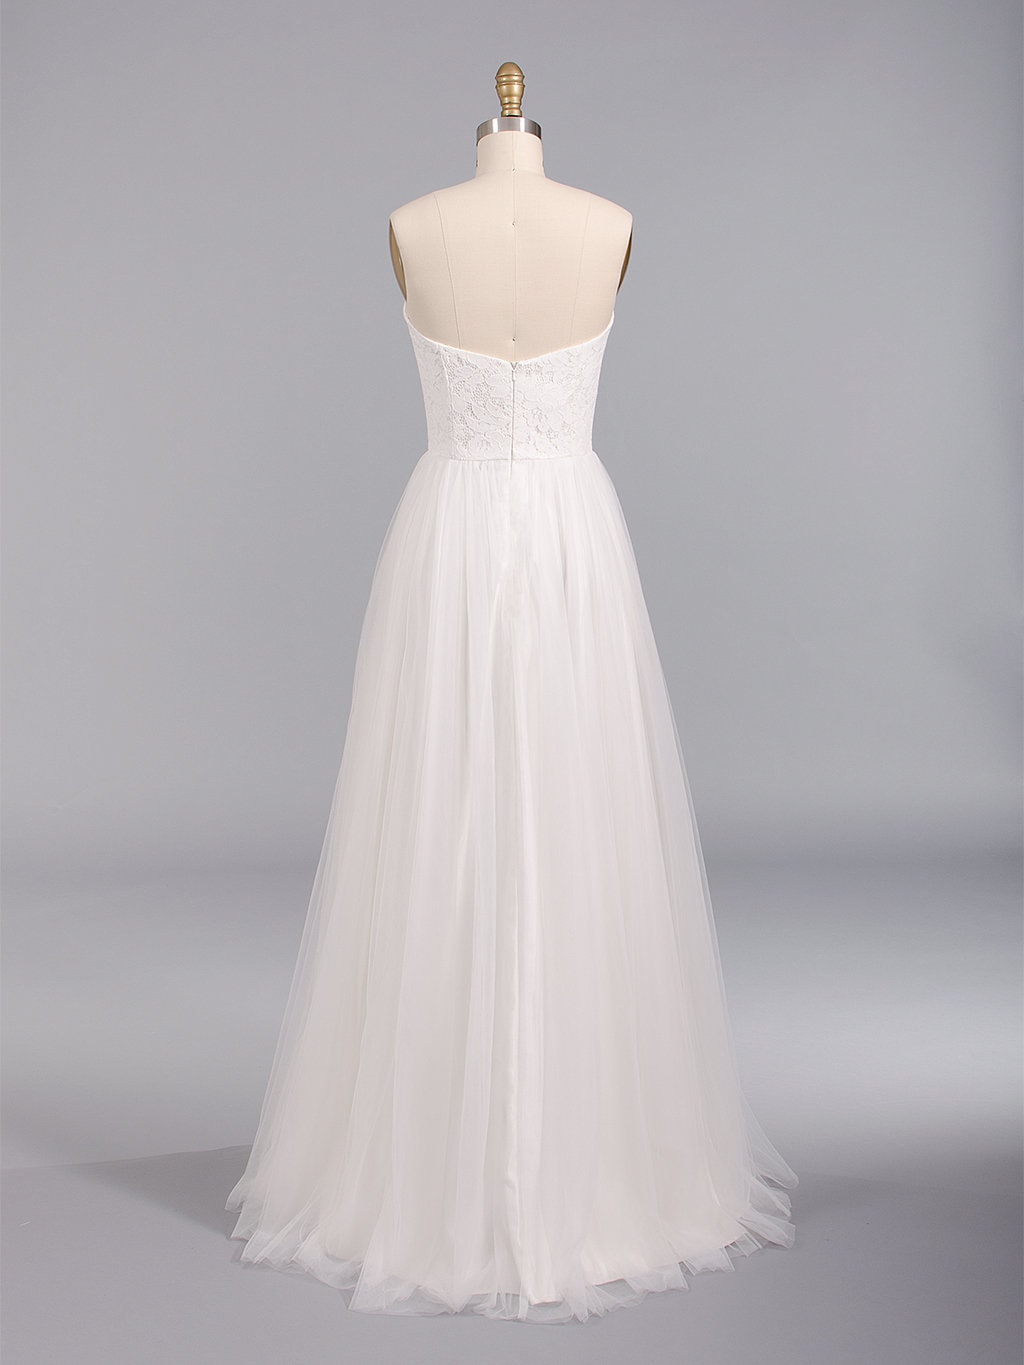 Black Wedding Dress Overlay Lace Wedding Dress Boho Wedding | Etsy